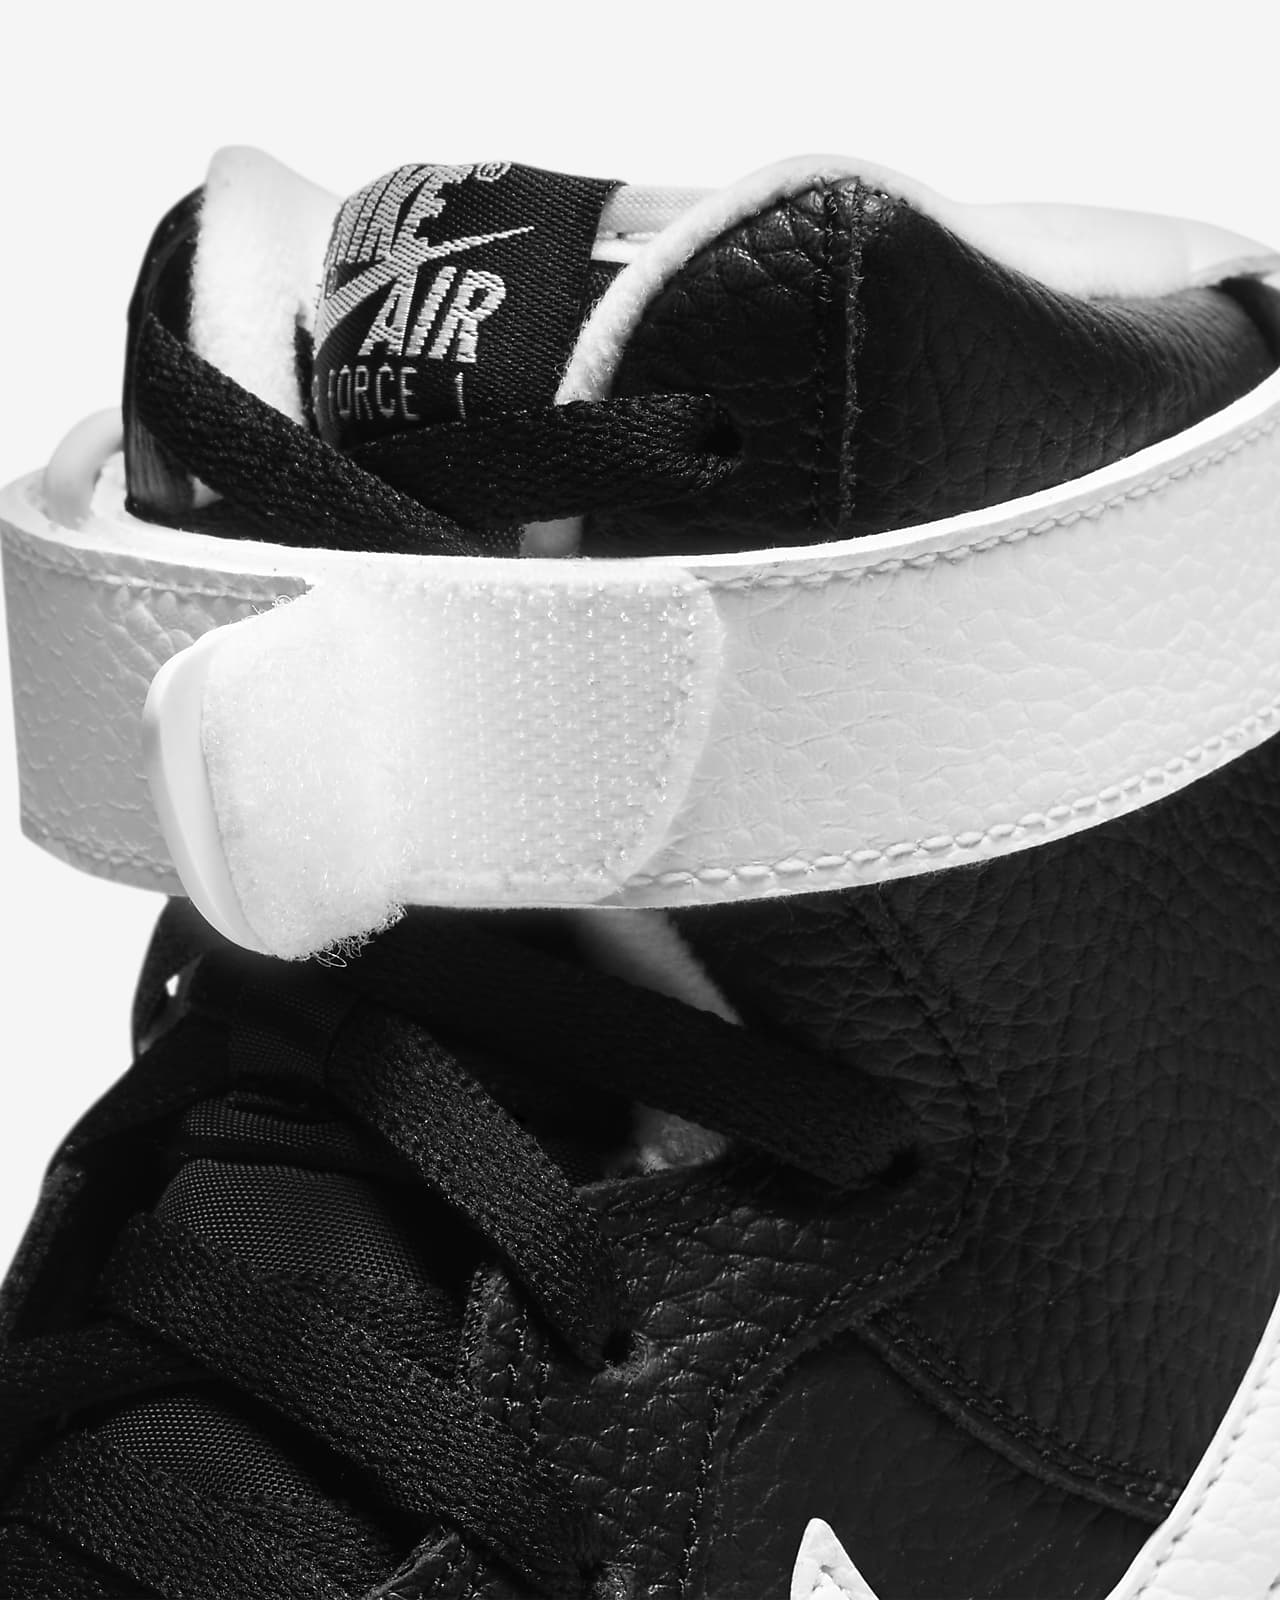 Nike Men's Air Force 1 High '07 Premium Casual Shoe